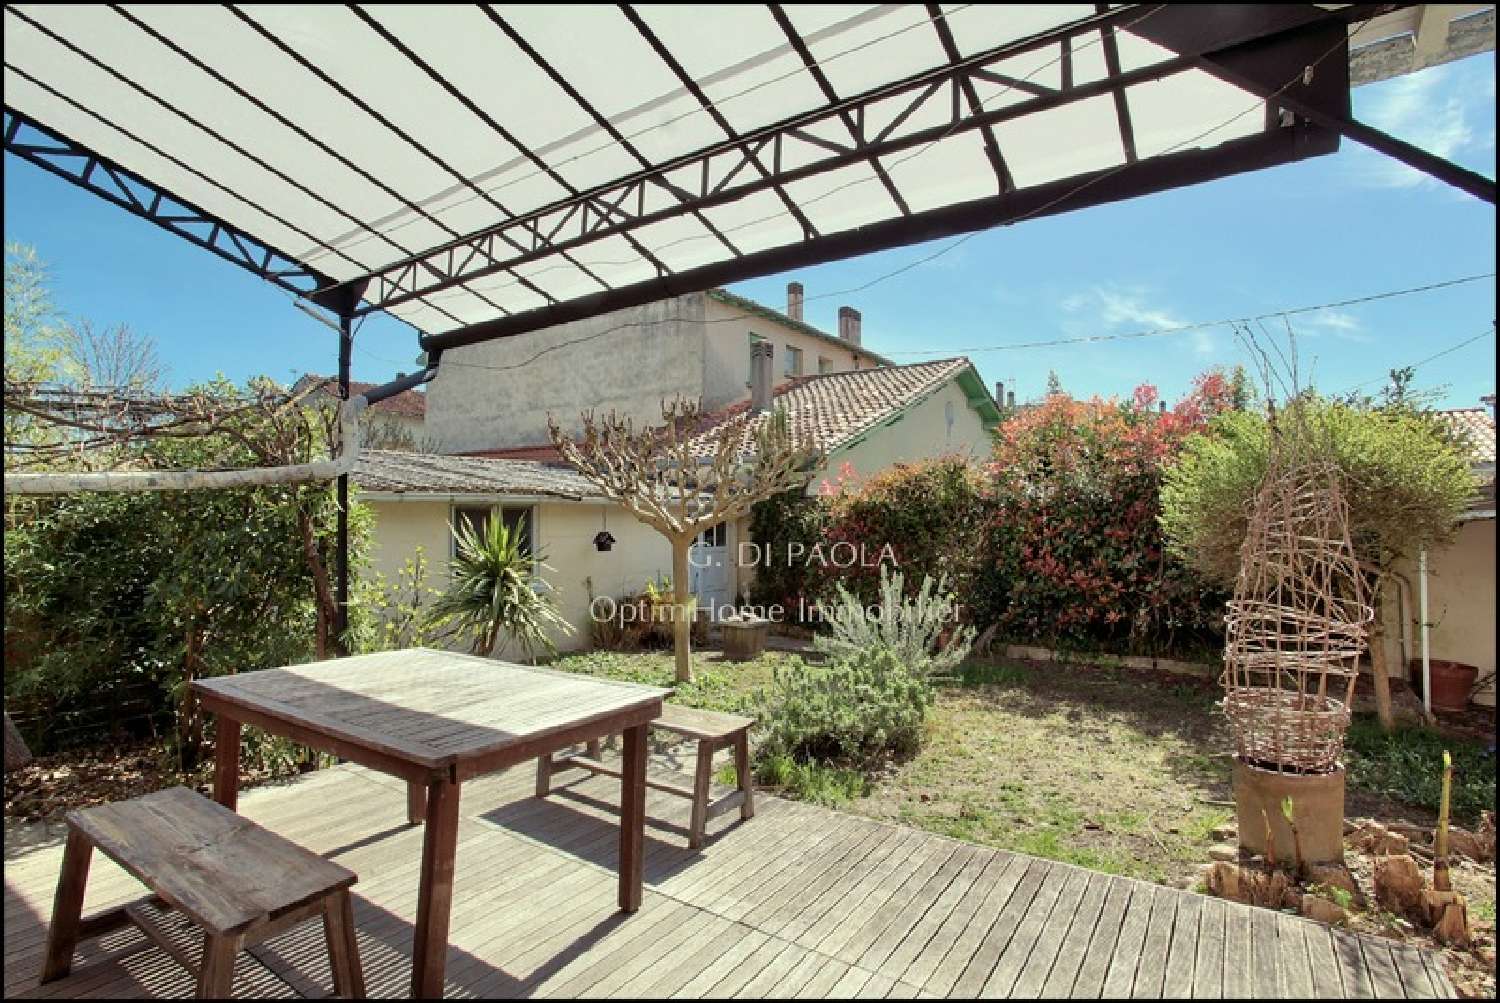  à vendre maison de ville Bergerac Dordogne 1